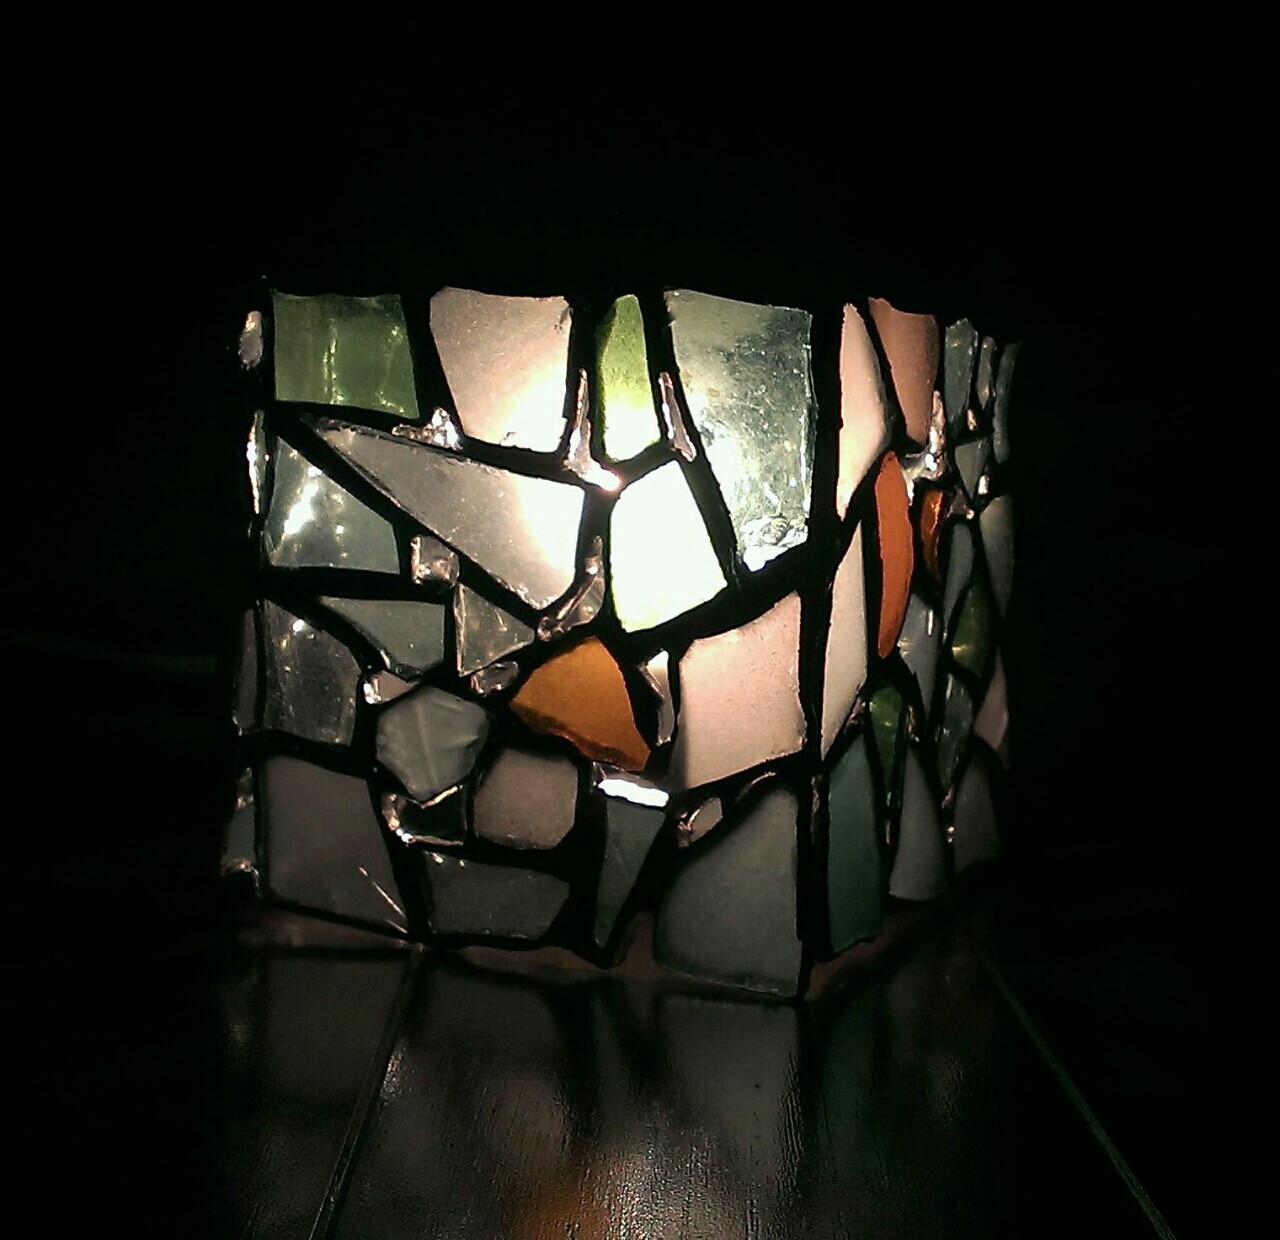 シーグラスでステンドグラスランプ作り 立方体 その2 ハンドメイド インテリア 世界の海岸から ビーチコーミング